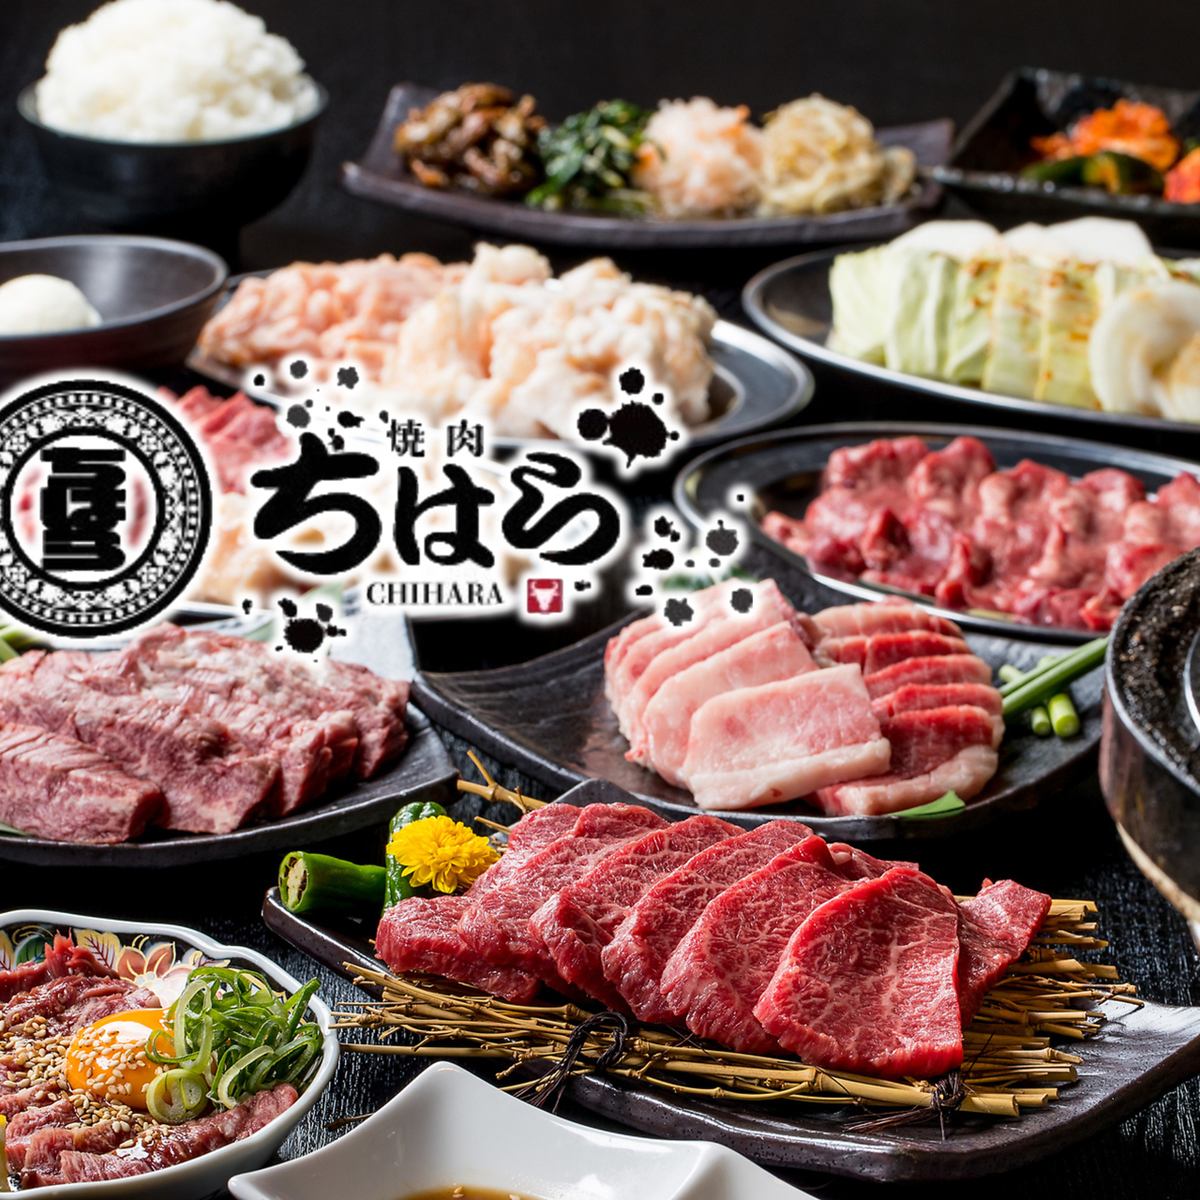 ≪从阪急茨木市站步行约1分钟≫享受新鲜的内脏和瘦肉♪还有宴会套餐！